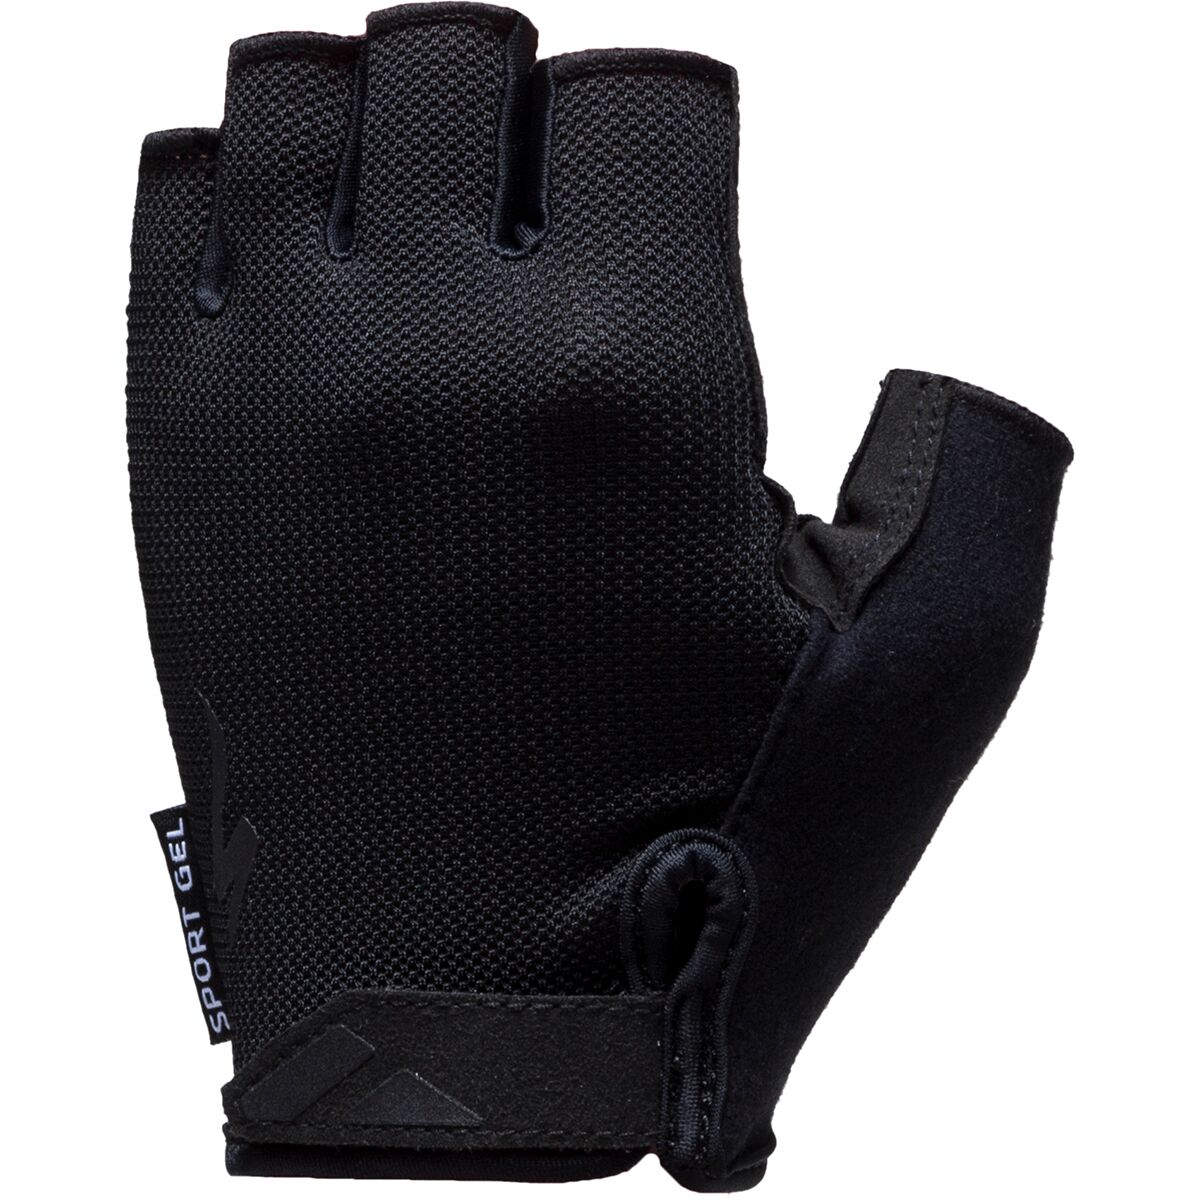 Specialized Body Geometry Sport Gel Short Finger Glove Black, S - Men's